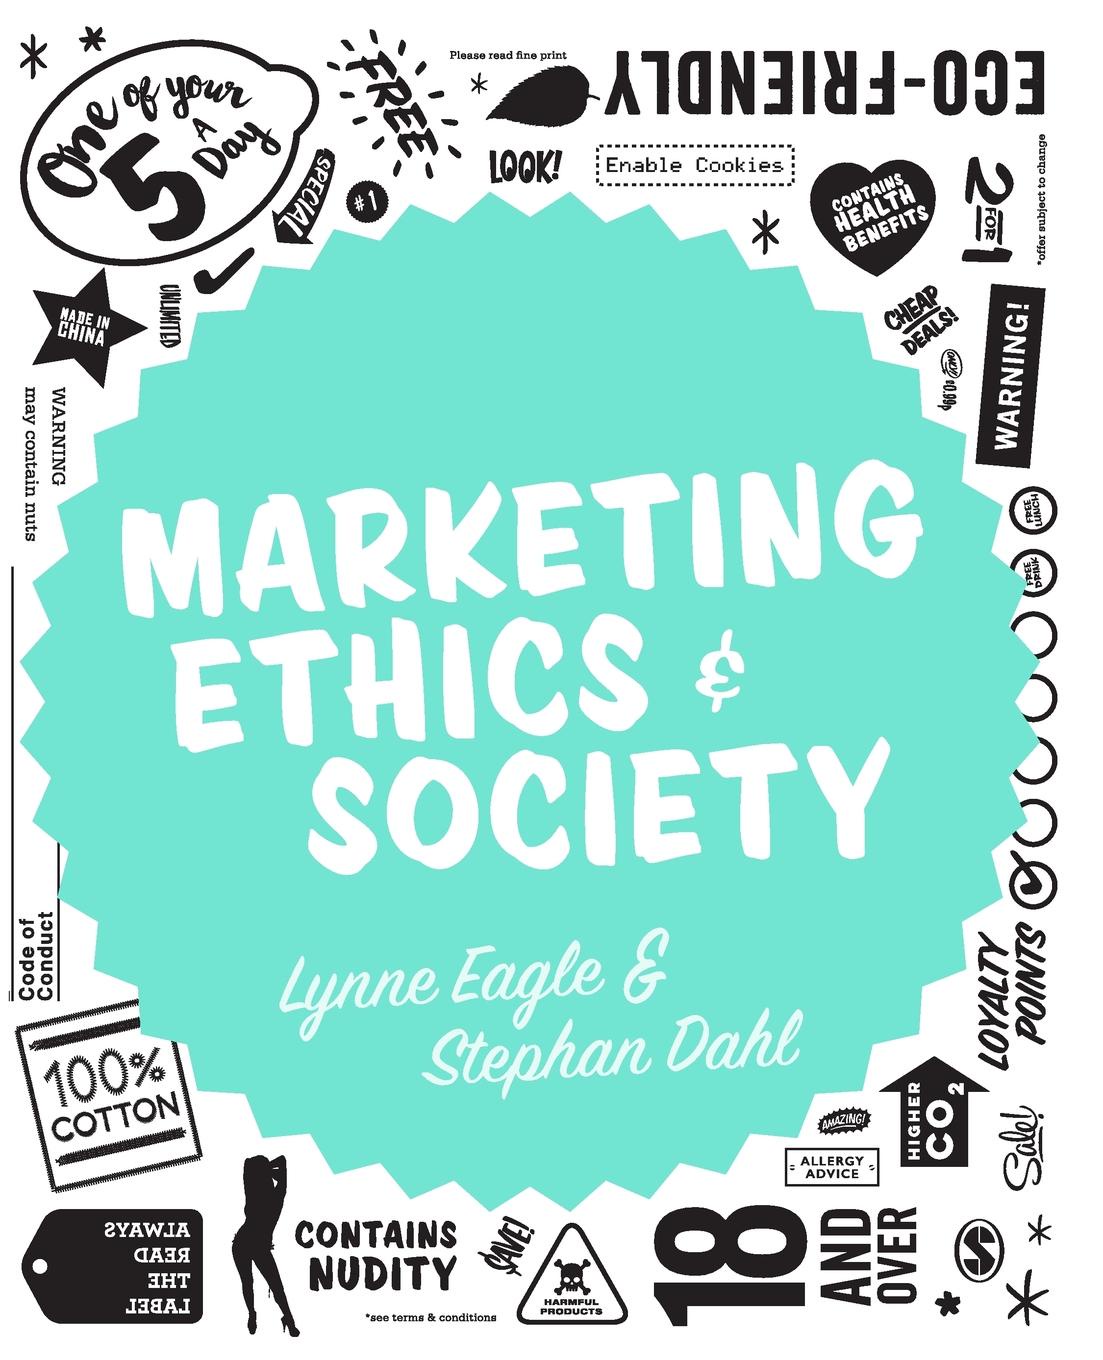 Marketing Ethics. Ethical marketing. Ethics of Society. Socio-ethical marketing.